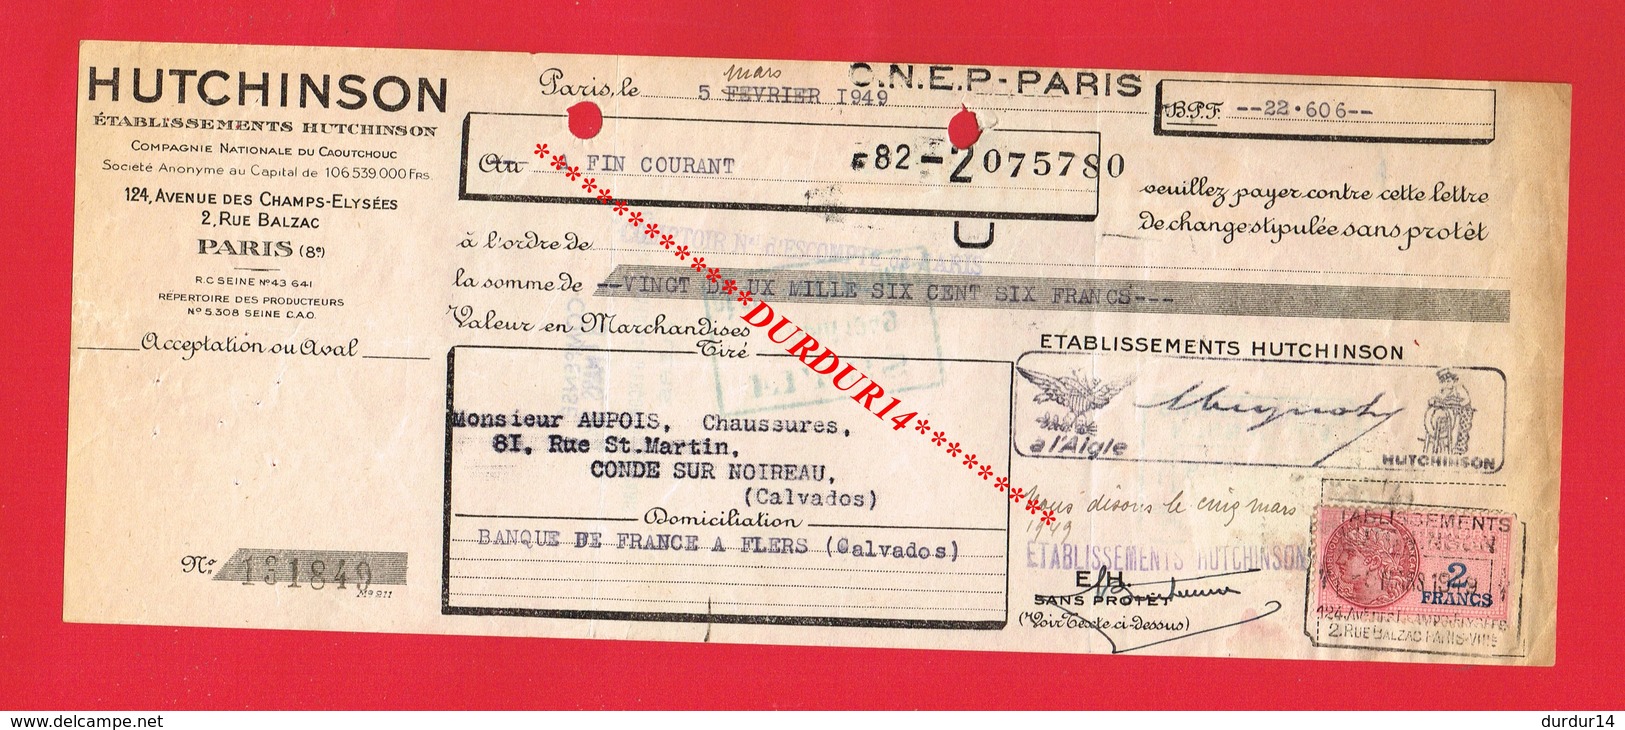 1 Lettre De Change & PARIS 8e Etablissements HUTCHINSON Compagnie Du Caoutchouc - Lettres De Change